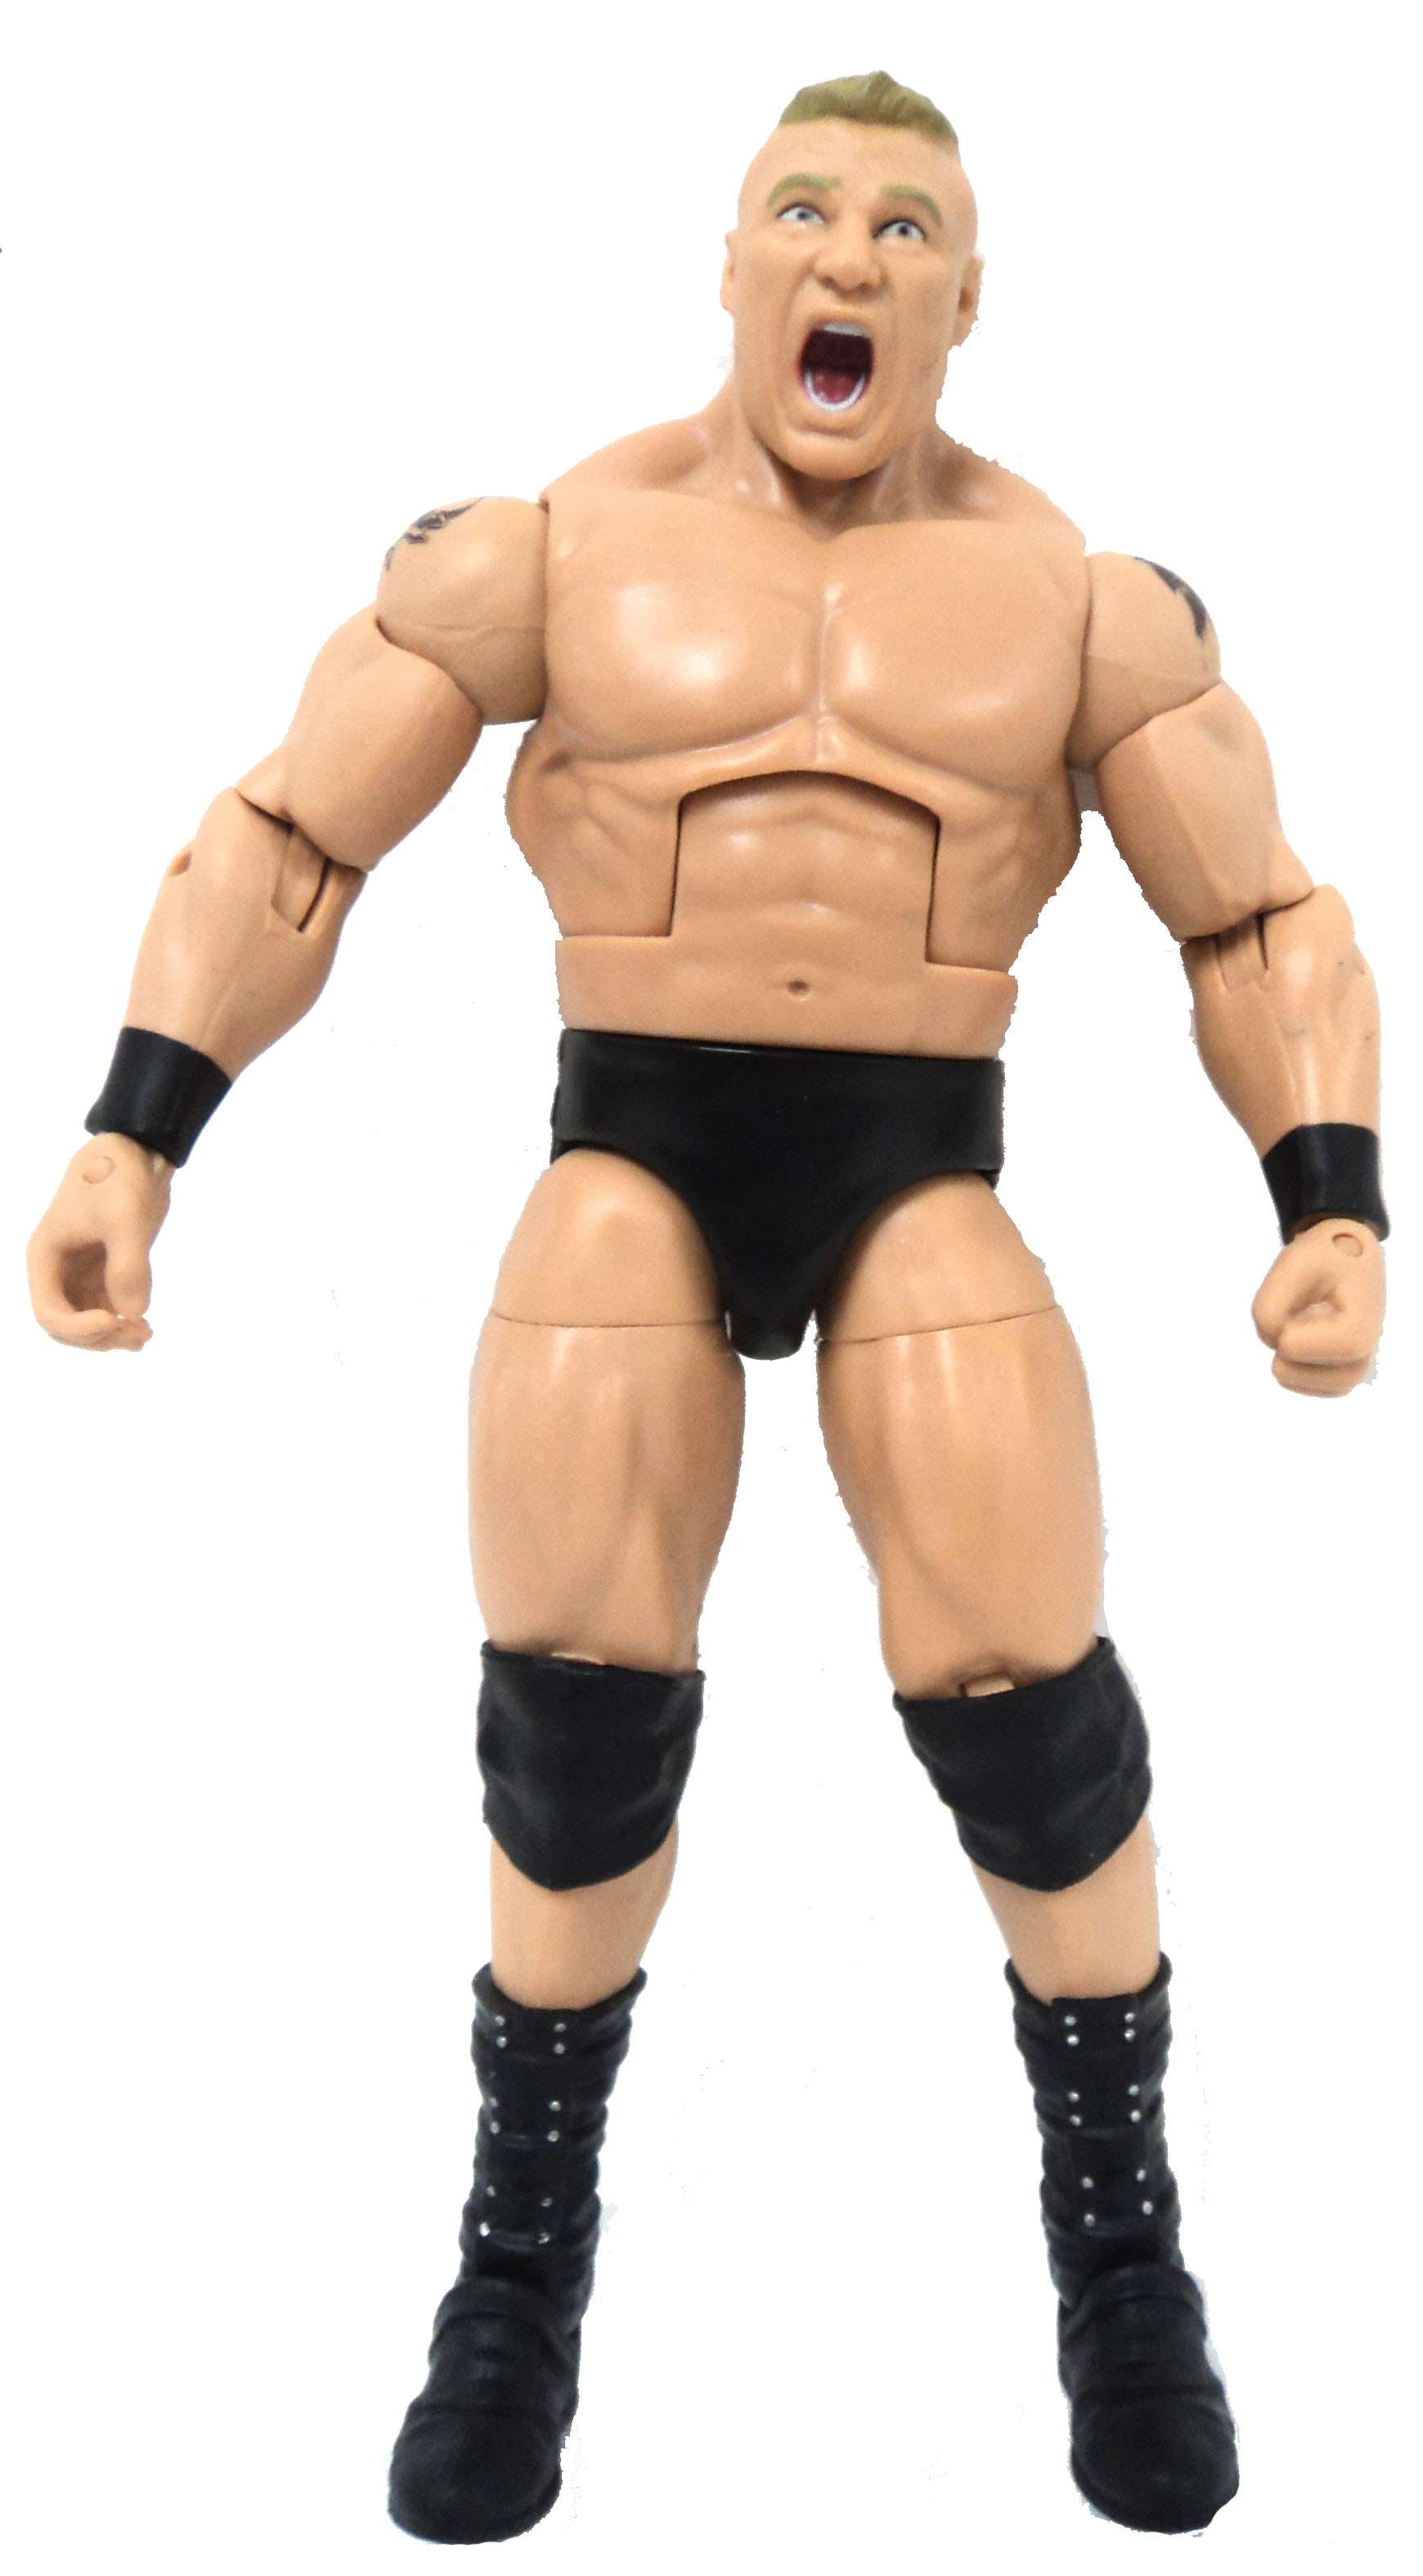 Elite Accessories for WWE Wrestling Figures Mattel Brock Lesnar Shirt